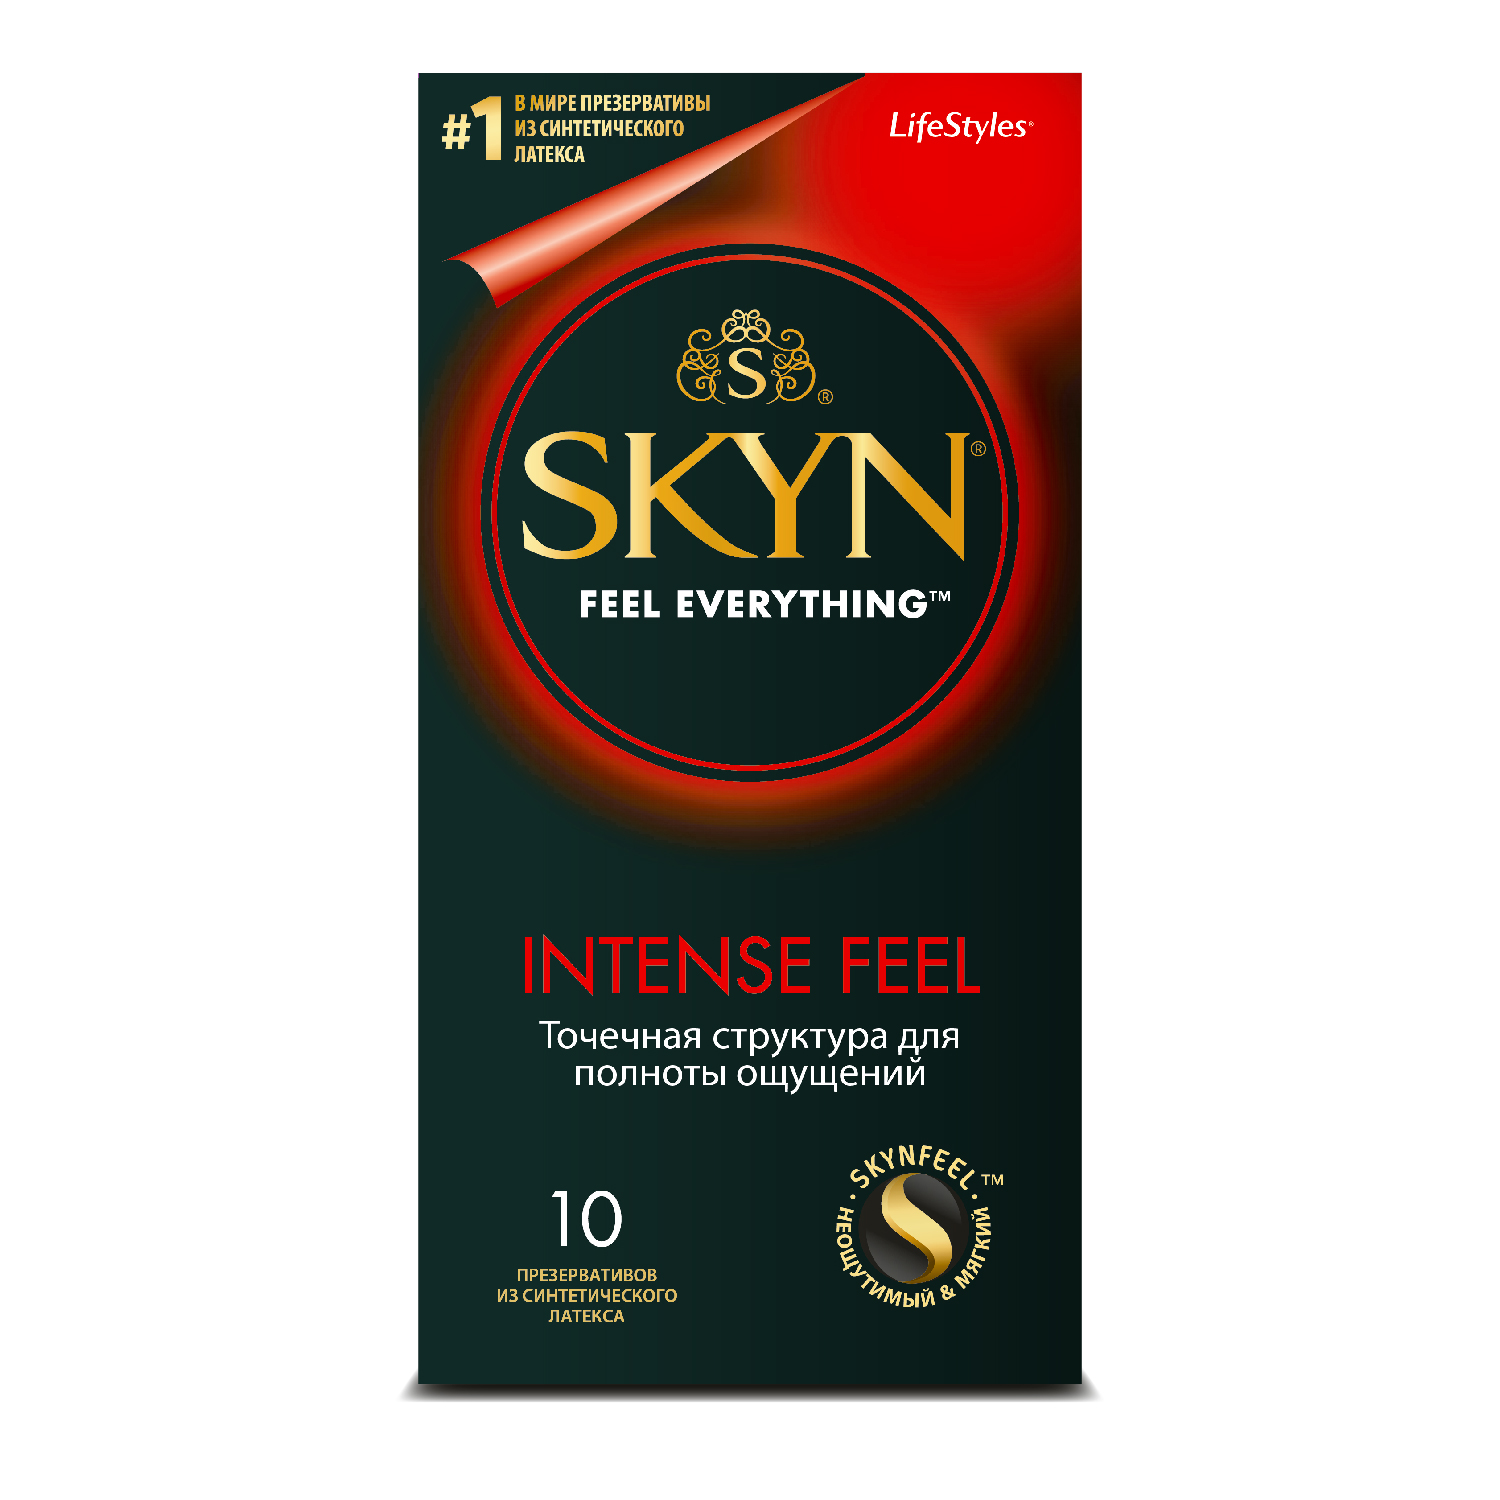 Скин Интенс Фил презервативы из синтетического латекса текстурированные №10 от РИГЛА